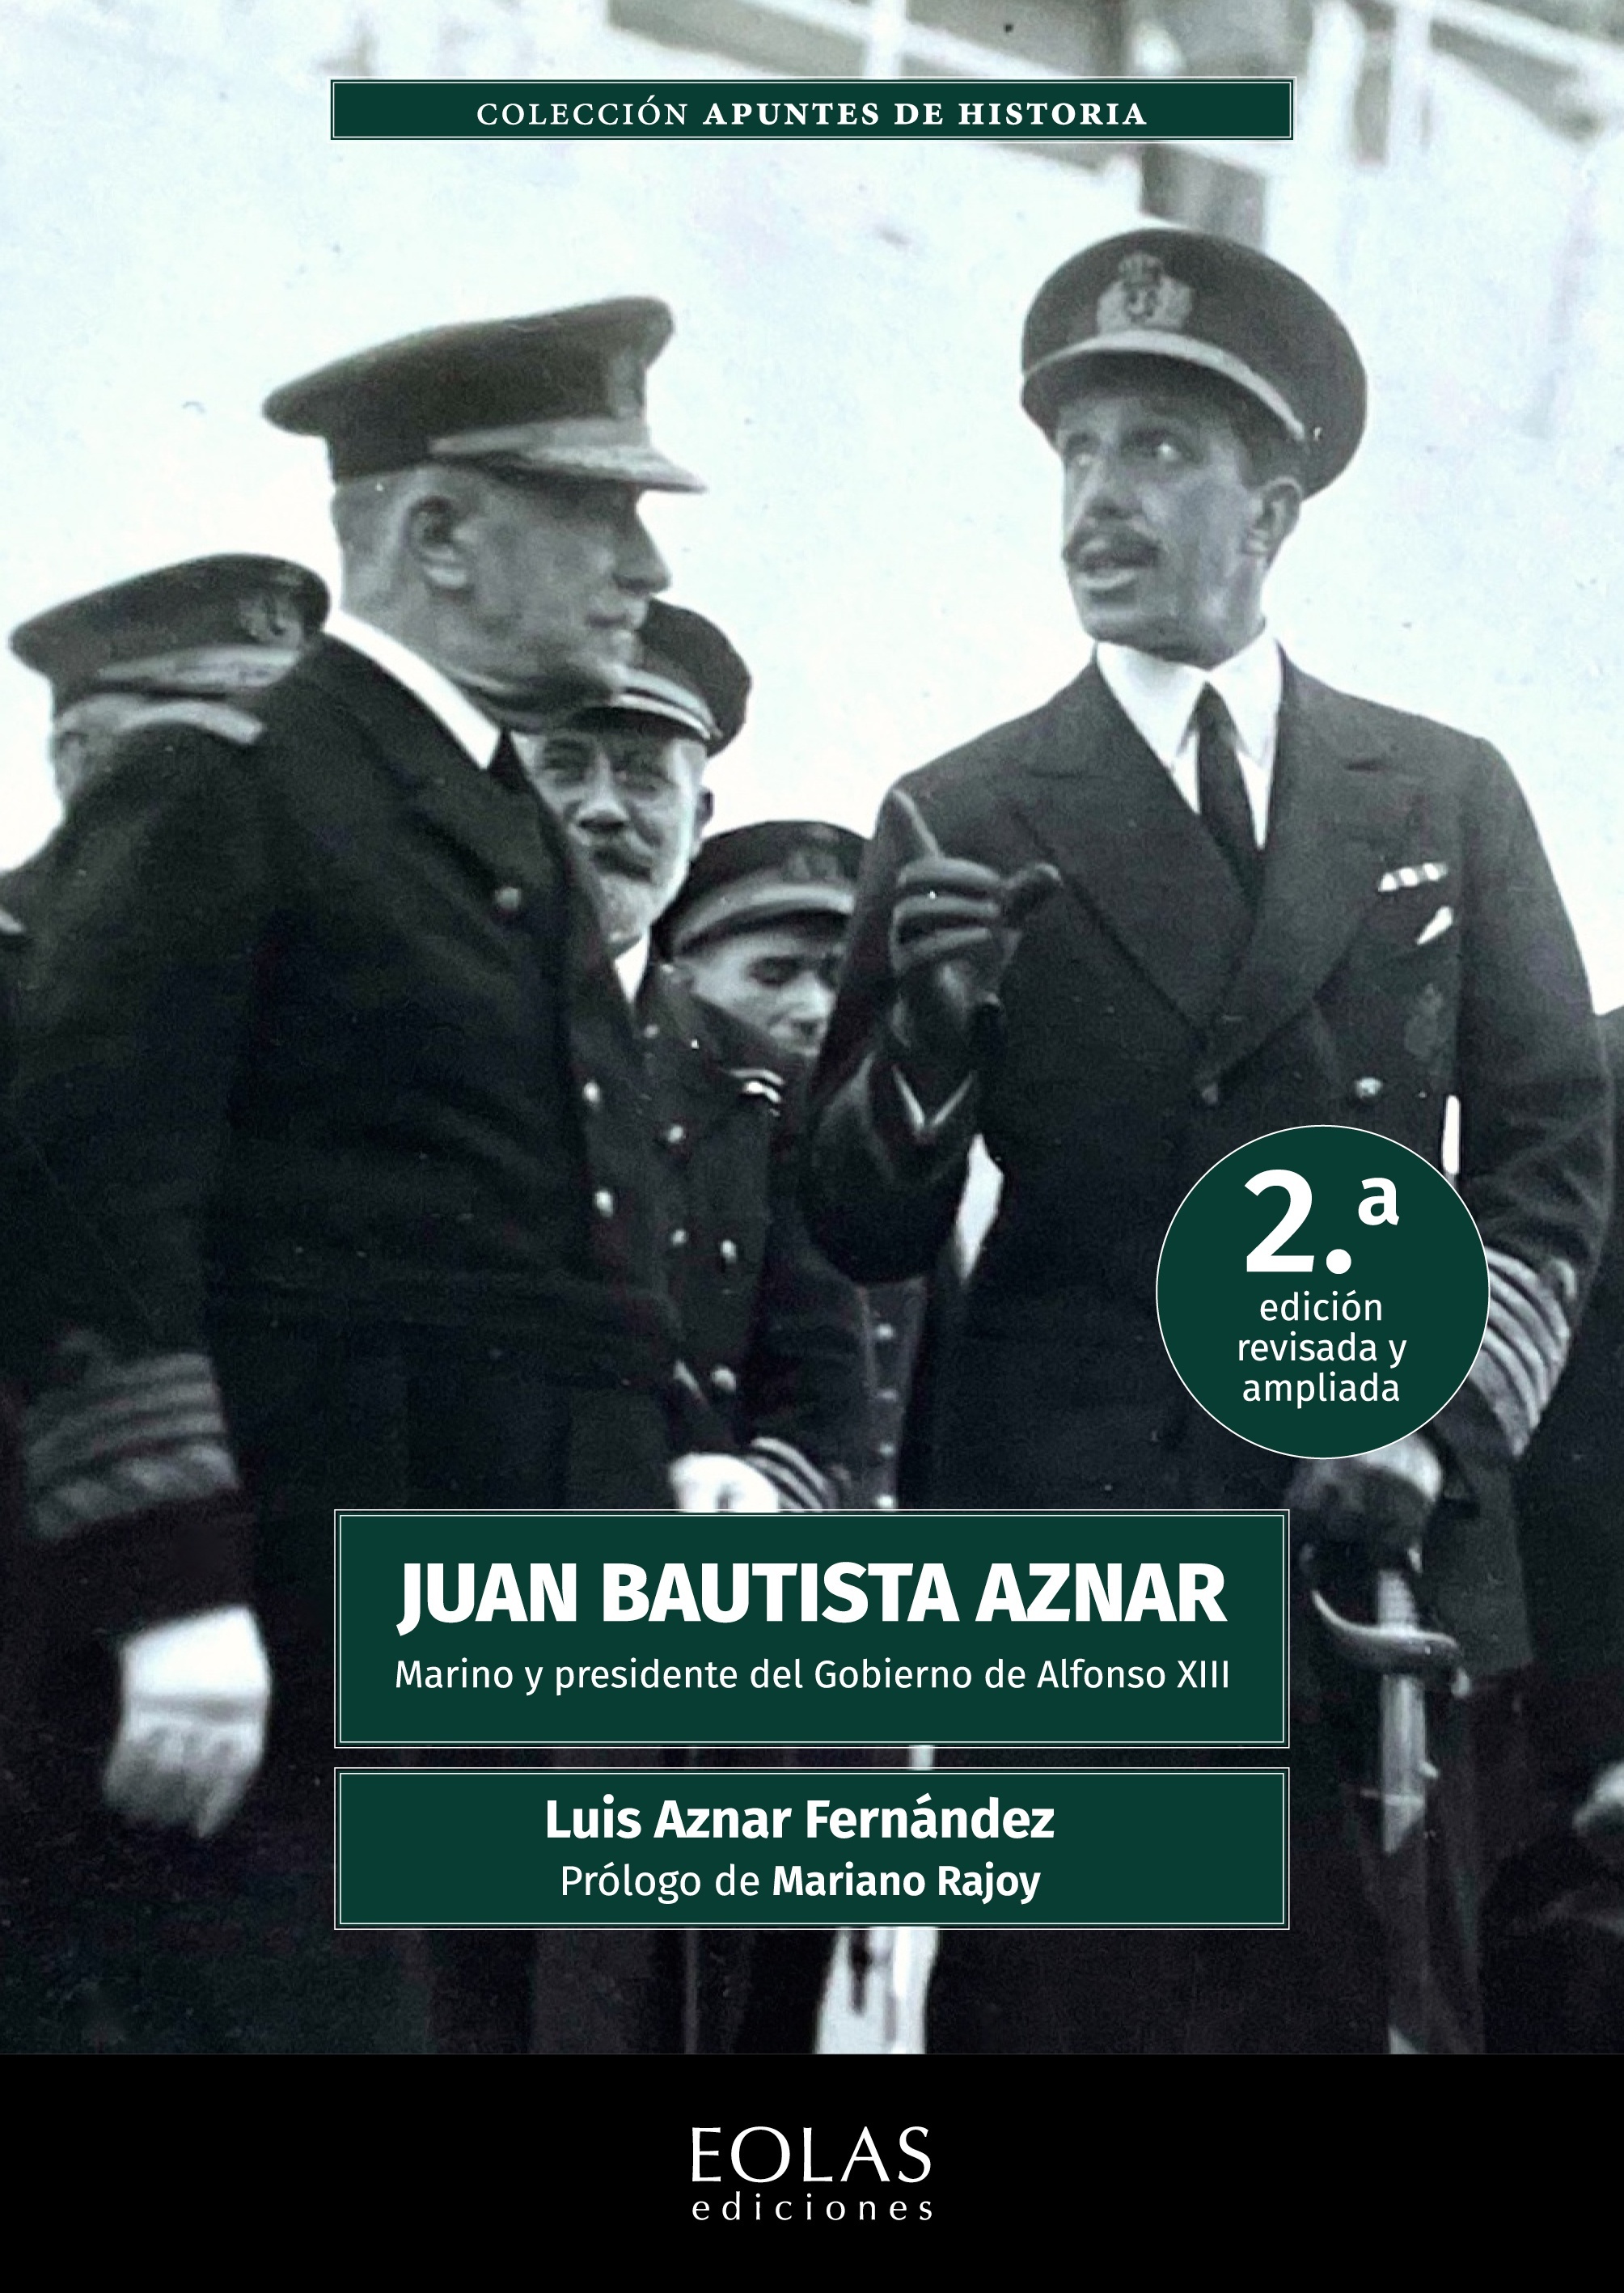 Juan Bautista Aznar. Marino y presidente del gobierno de Alfonso XIII "2.ª edición revisada y ampliada"